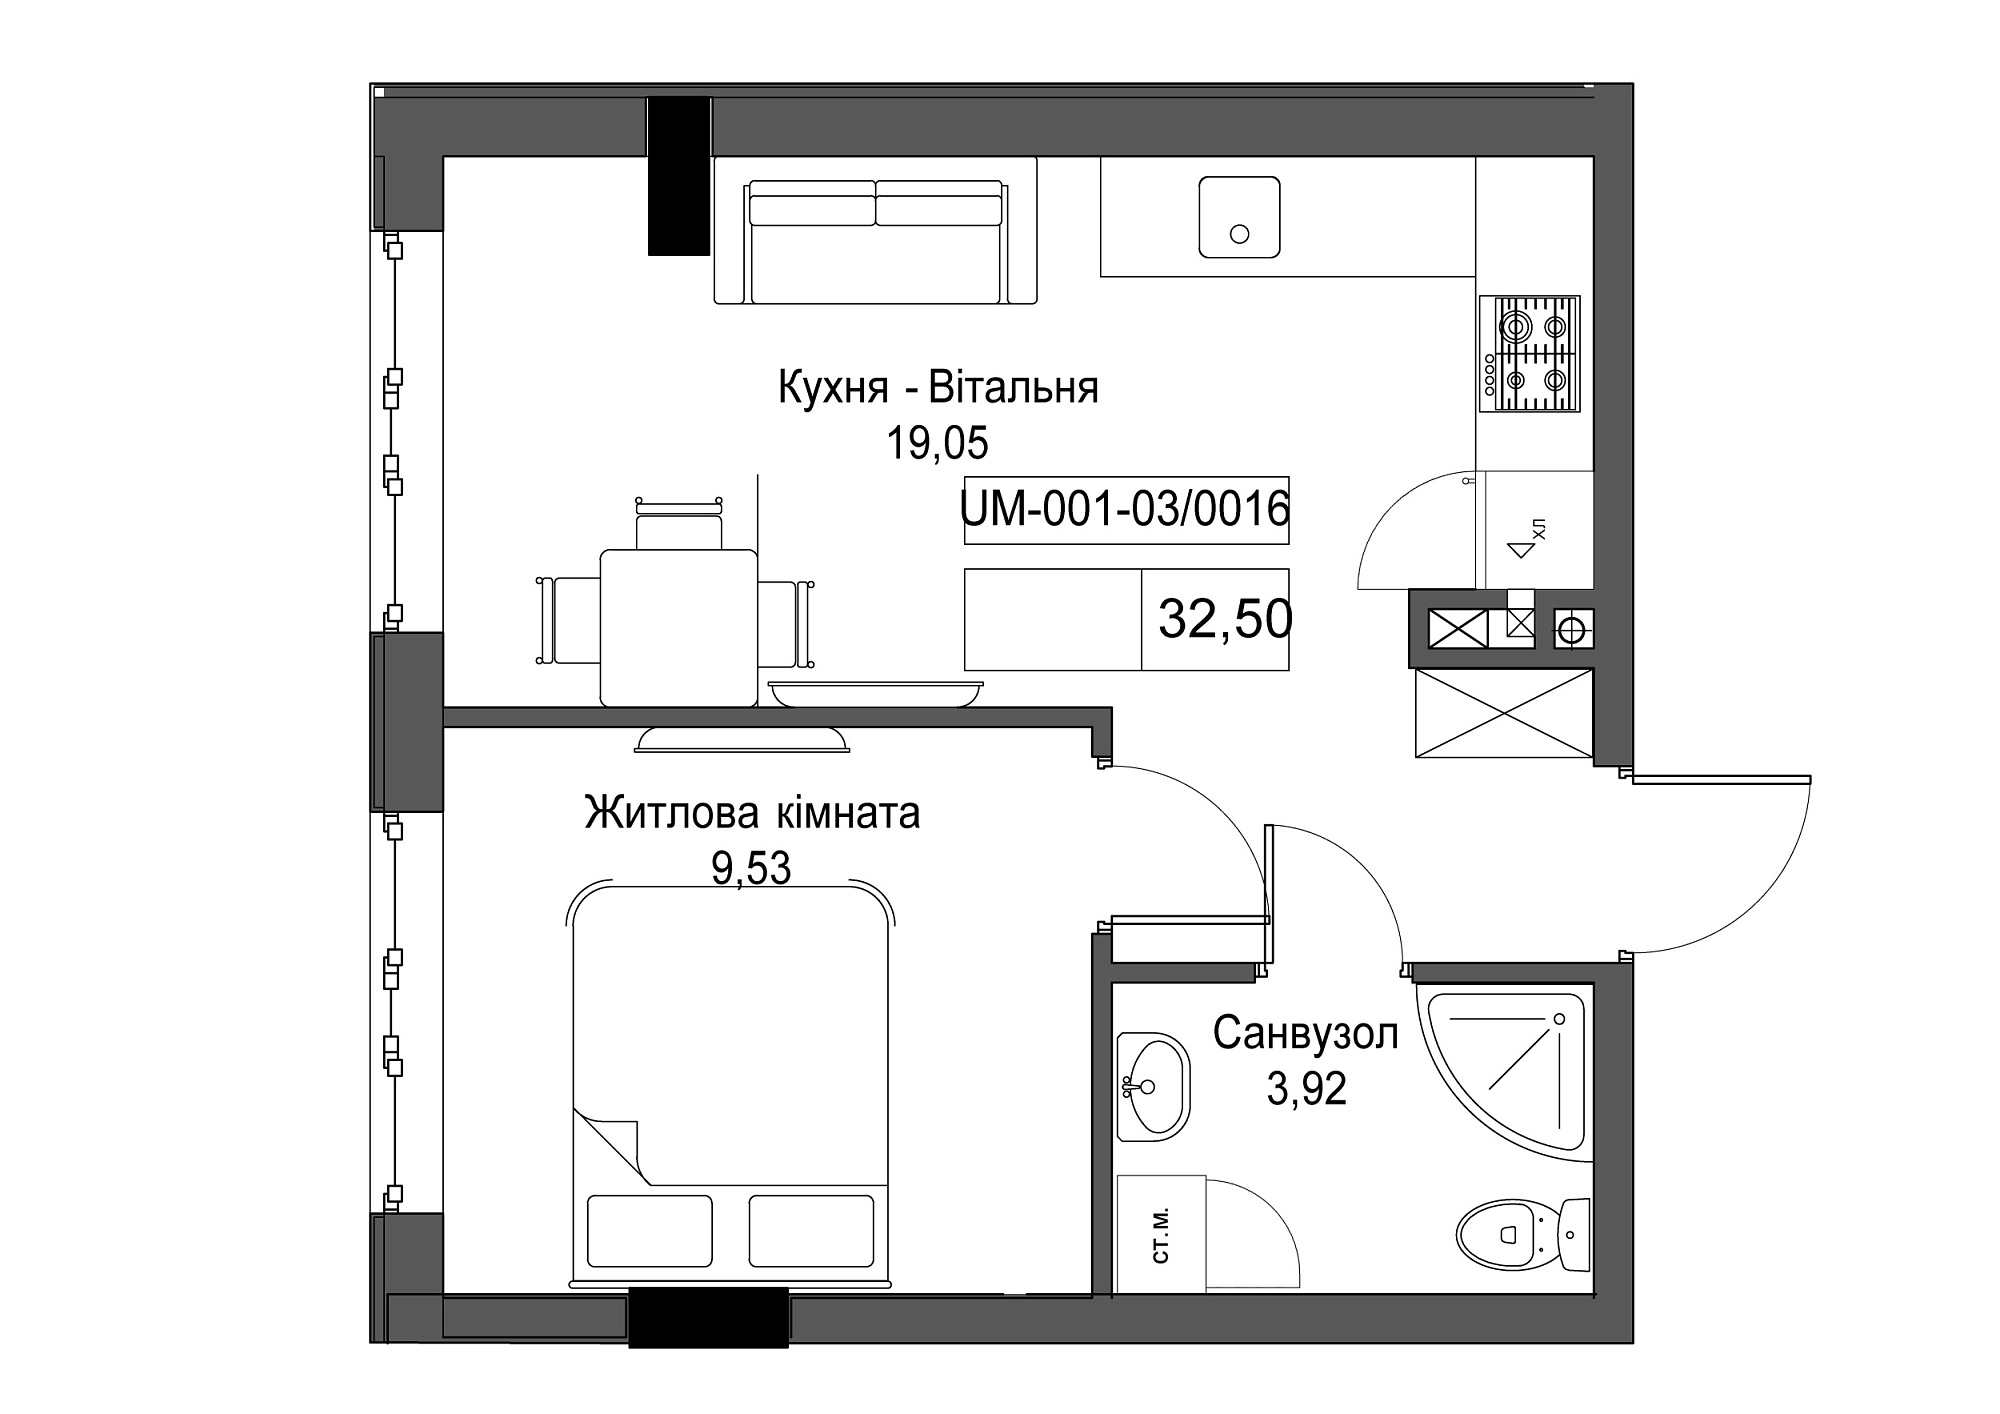 Планировка 1-к квартира площей 32.5м2, UM-001-03/0016.